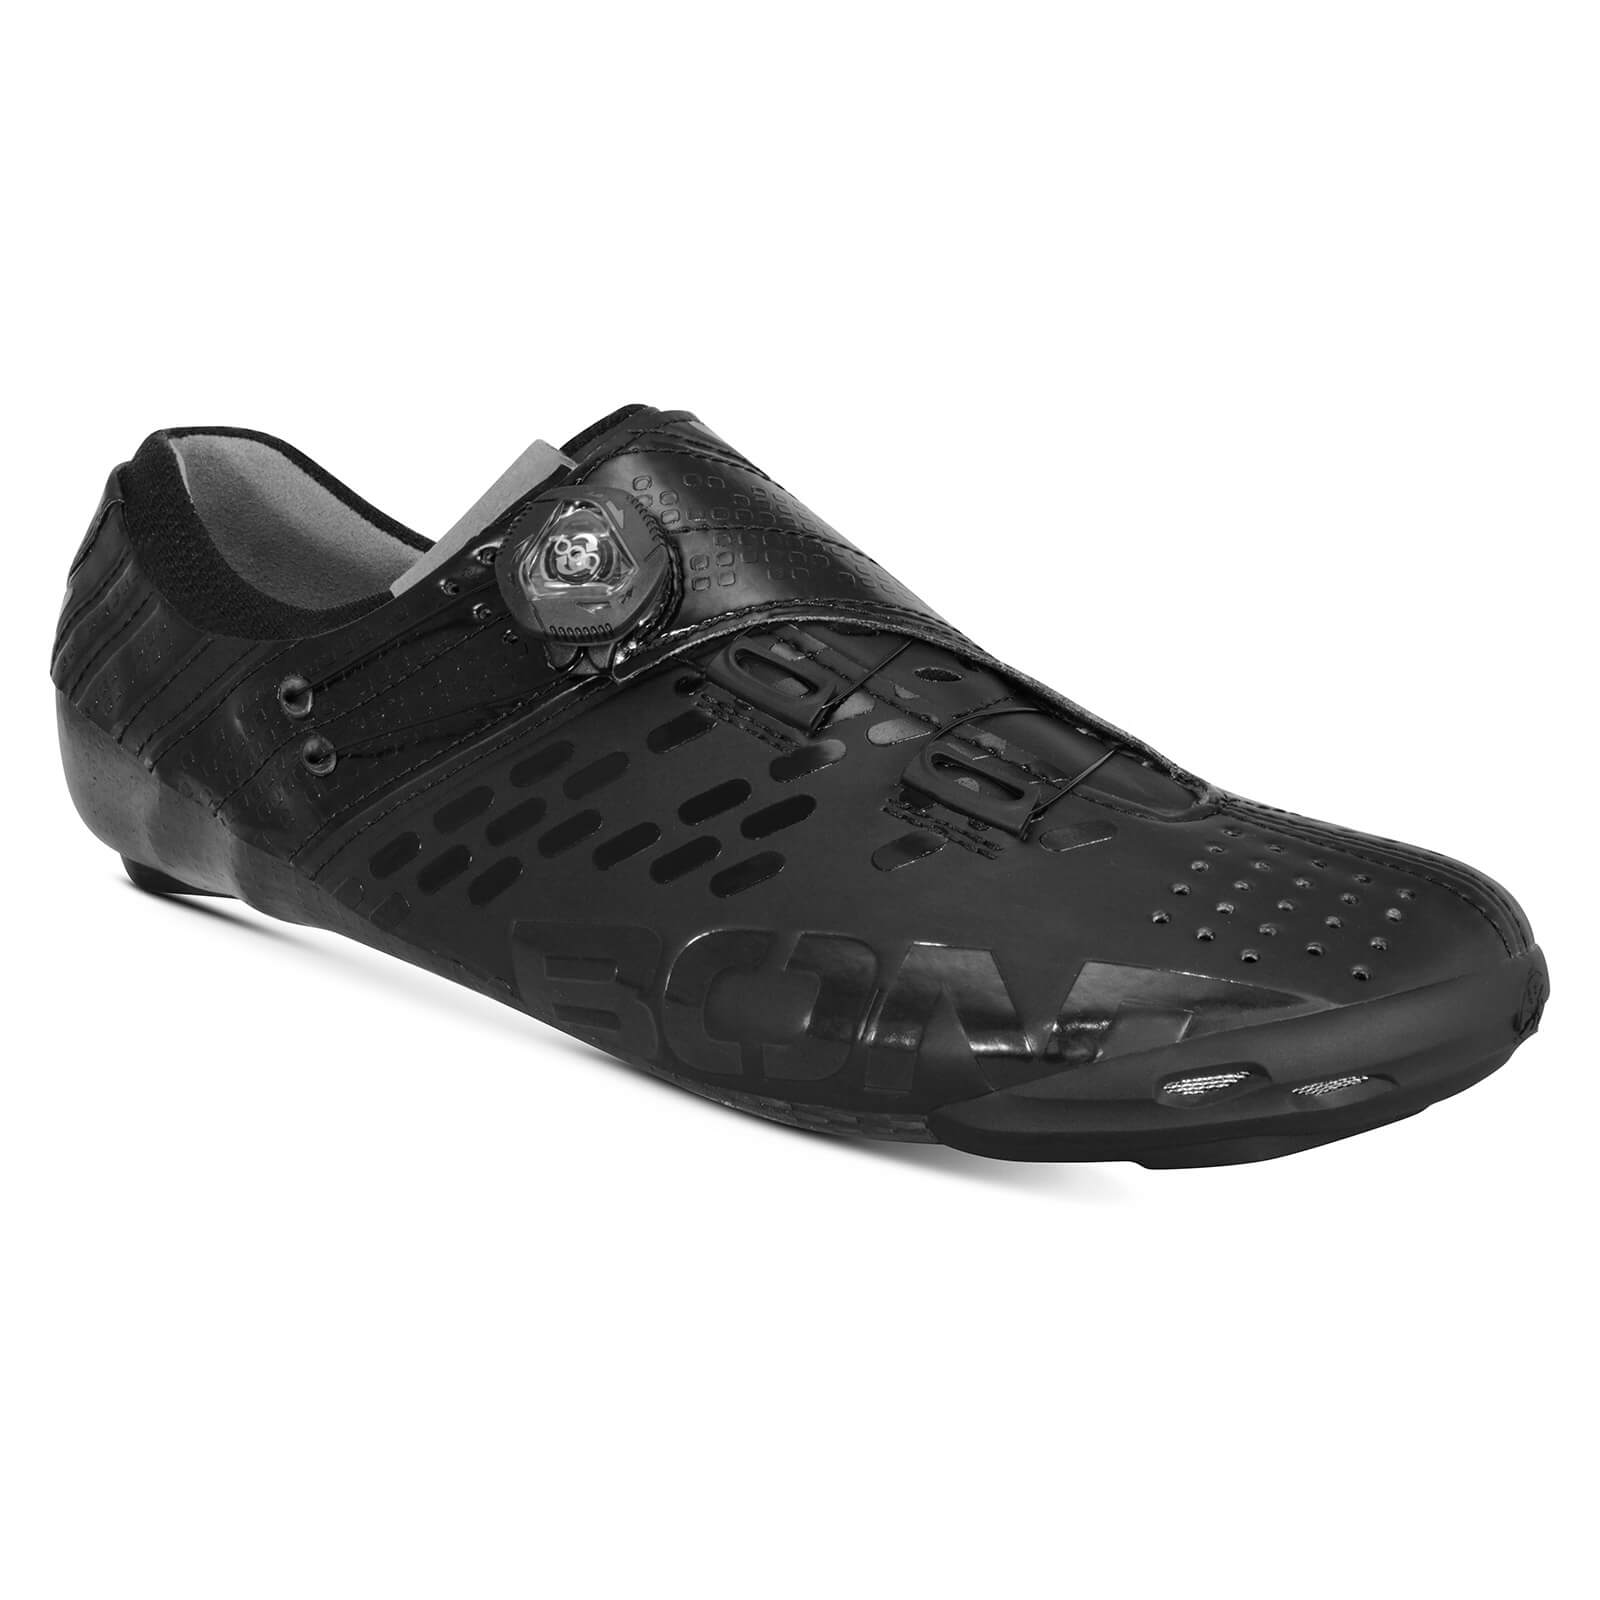 Bont Helix Road Shoes - EU 45 - Black